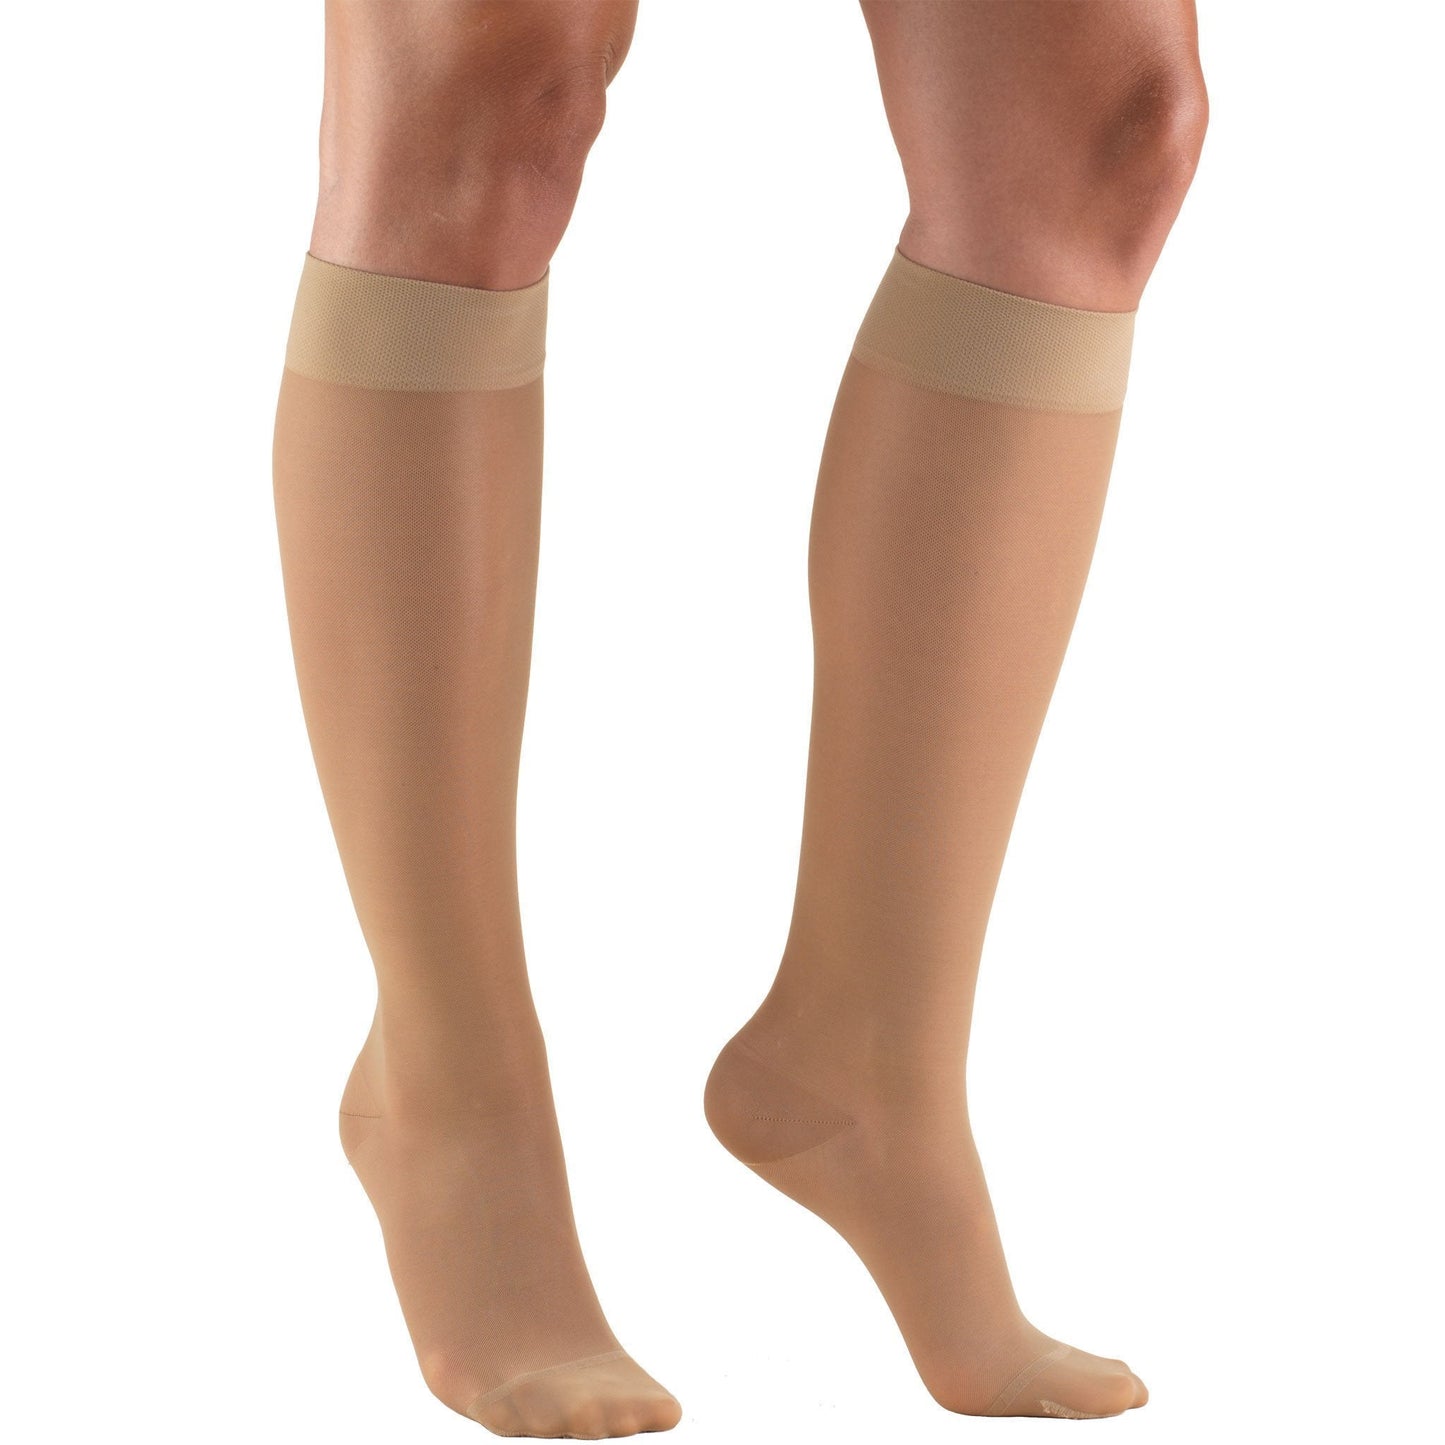 Truform Lites Women's 15-20 mmHg Knee High, Light Beige